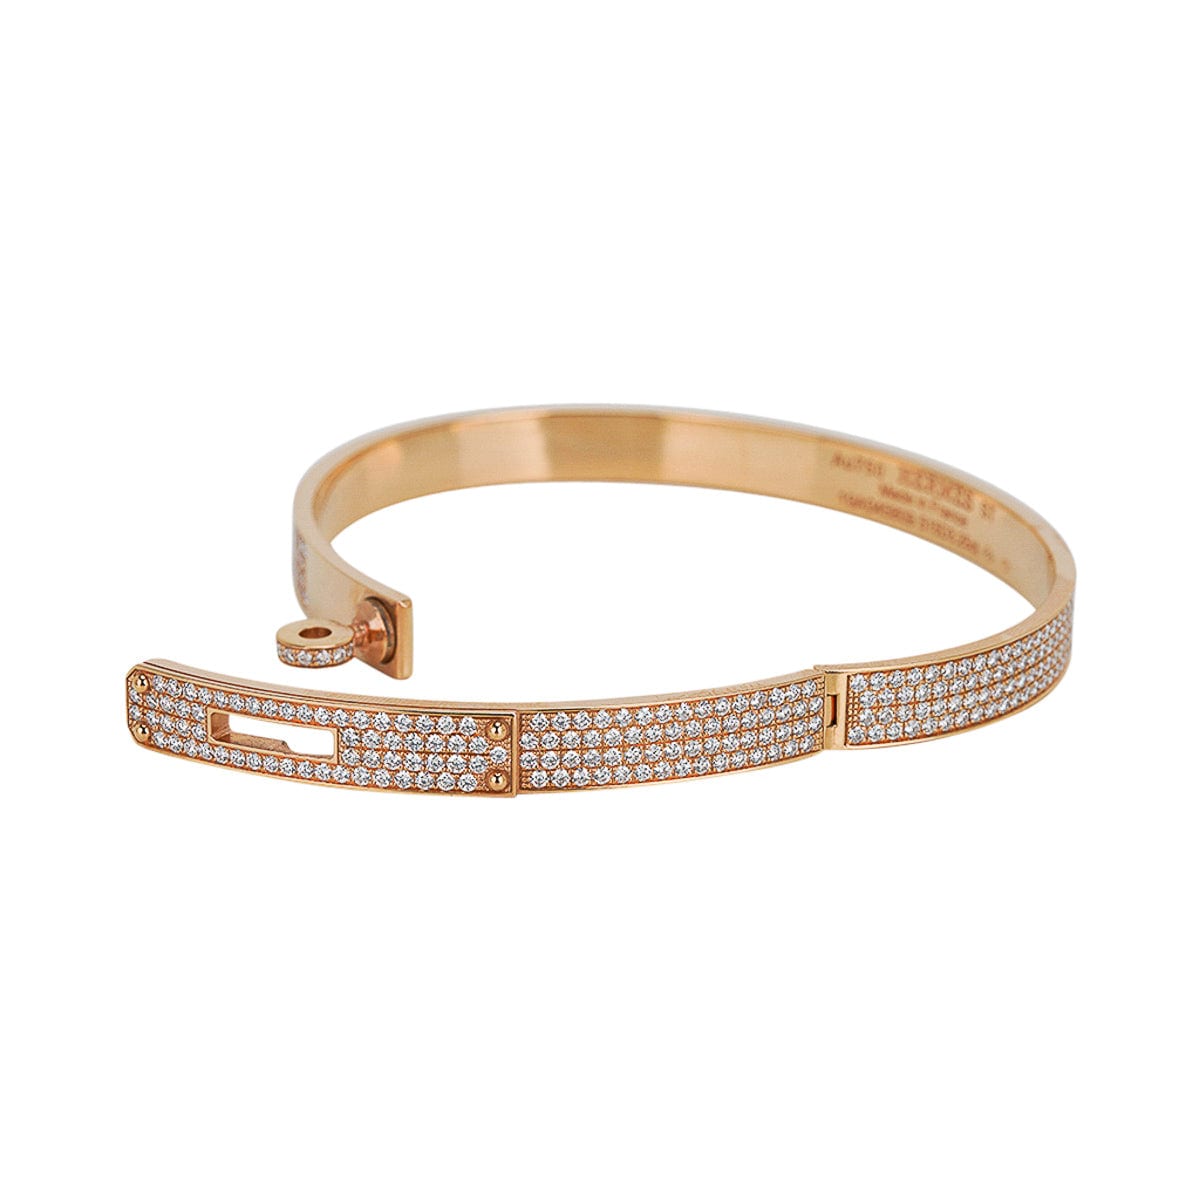 Hermes #bracelet #diamonds #birkin #Himalayan